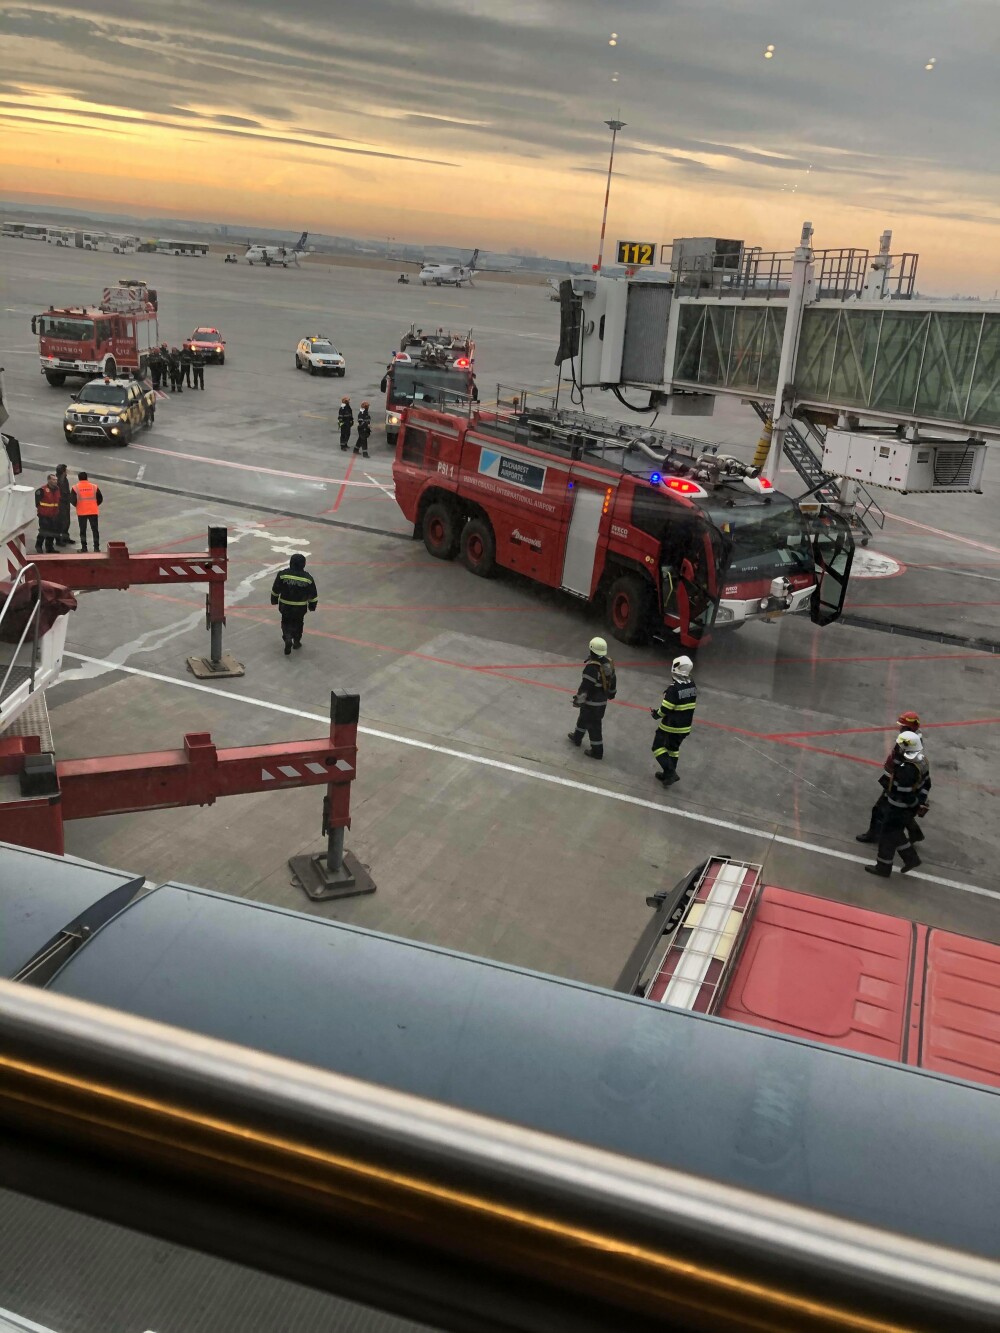 Incendiu în terminalul plecări din Aeroportul Otopeni. Martorii se plâng de dezorganizare - Imaginea 4